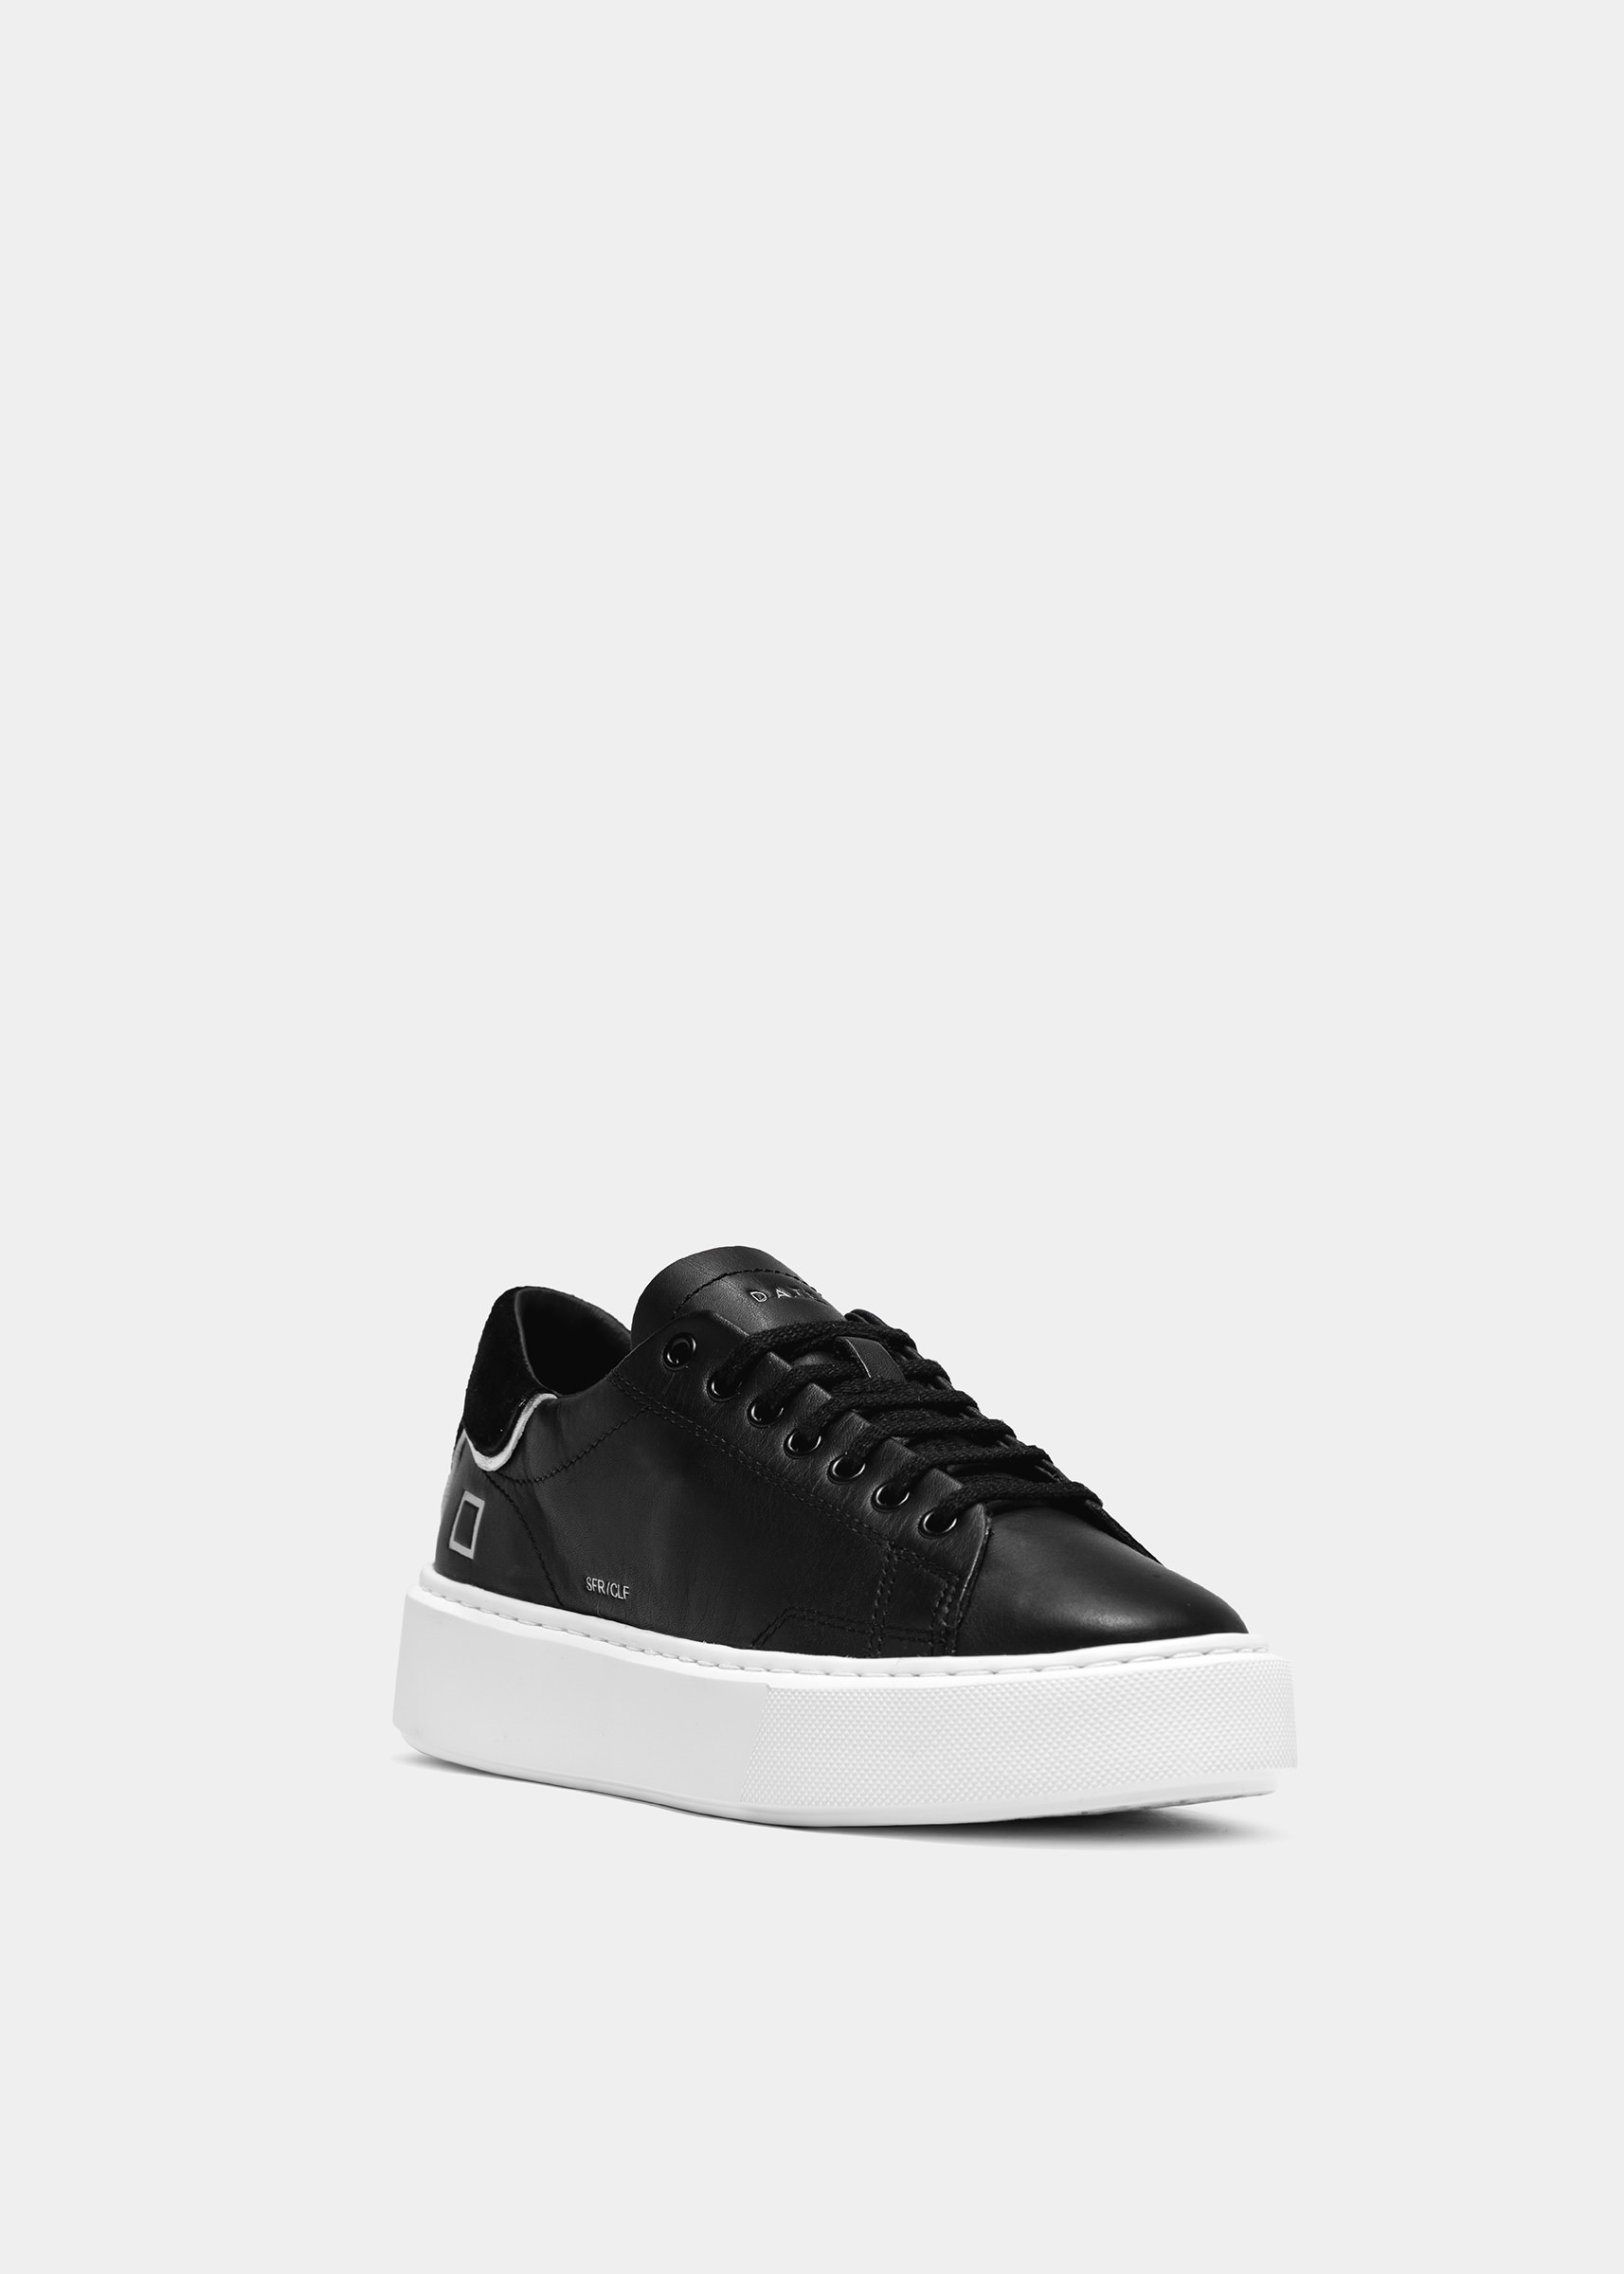 D.A.T.E. Sneakers SFERA CALF TOTAL BLACK | Date shoes